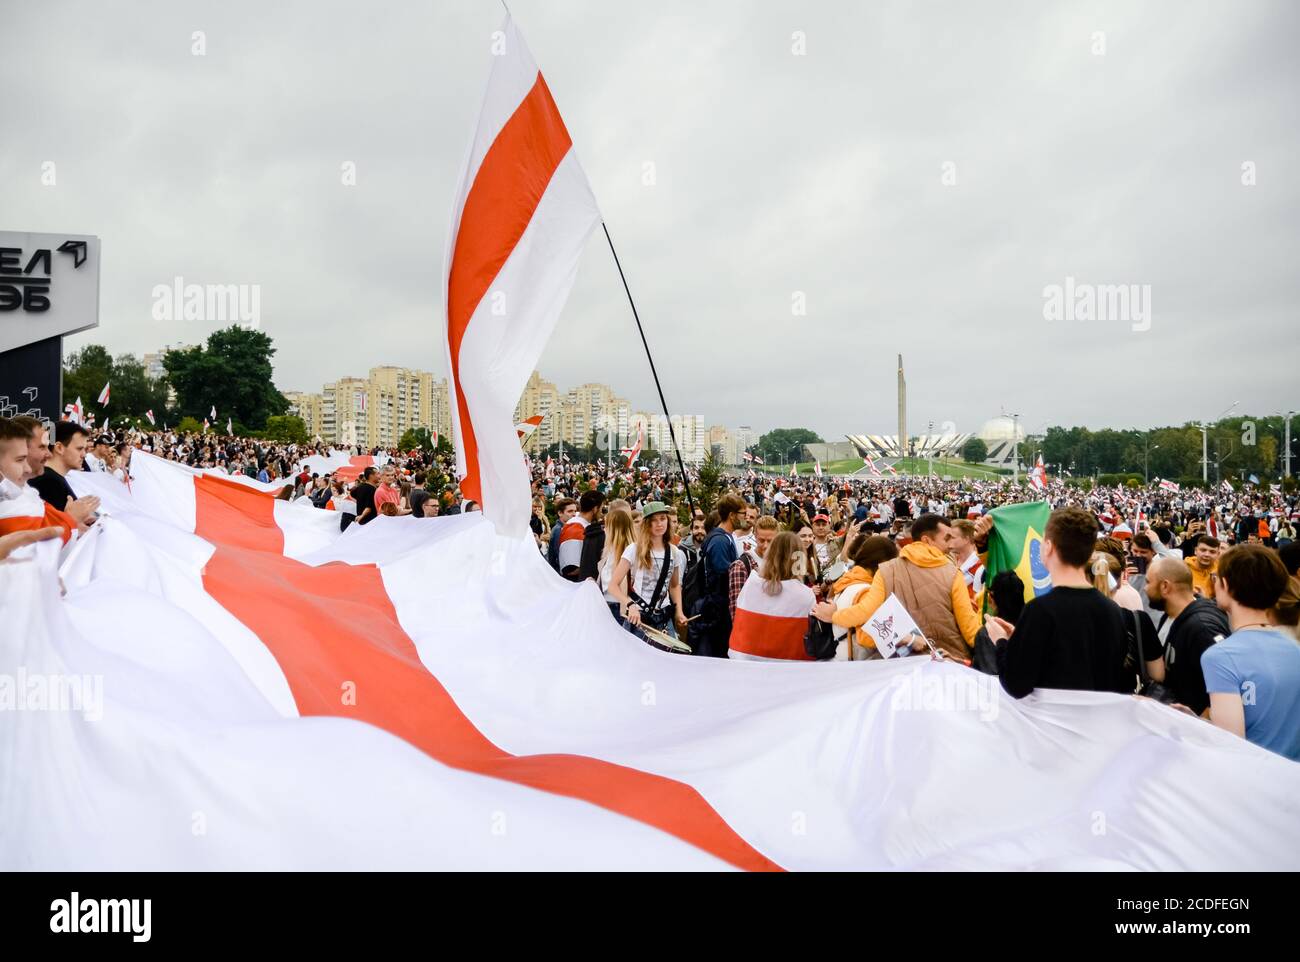 Minsk, Bielorrusia - 23 de agosto de 2020: El pueblo bielorruso participa en protestas pacíficas después de las elecciones presidenciales en Bielorrusia Foto de stock